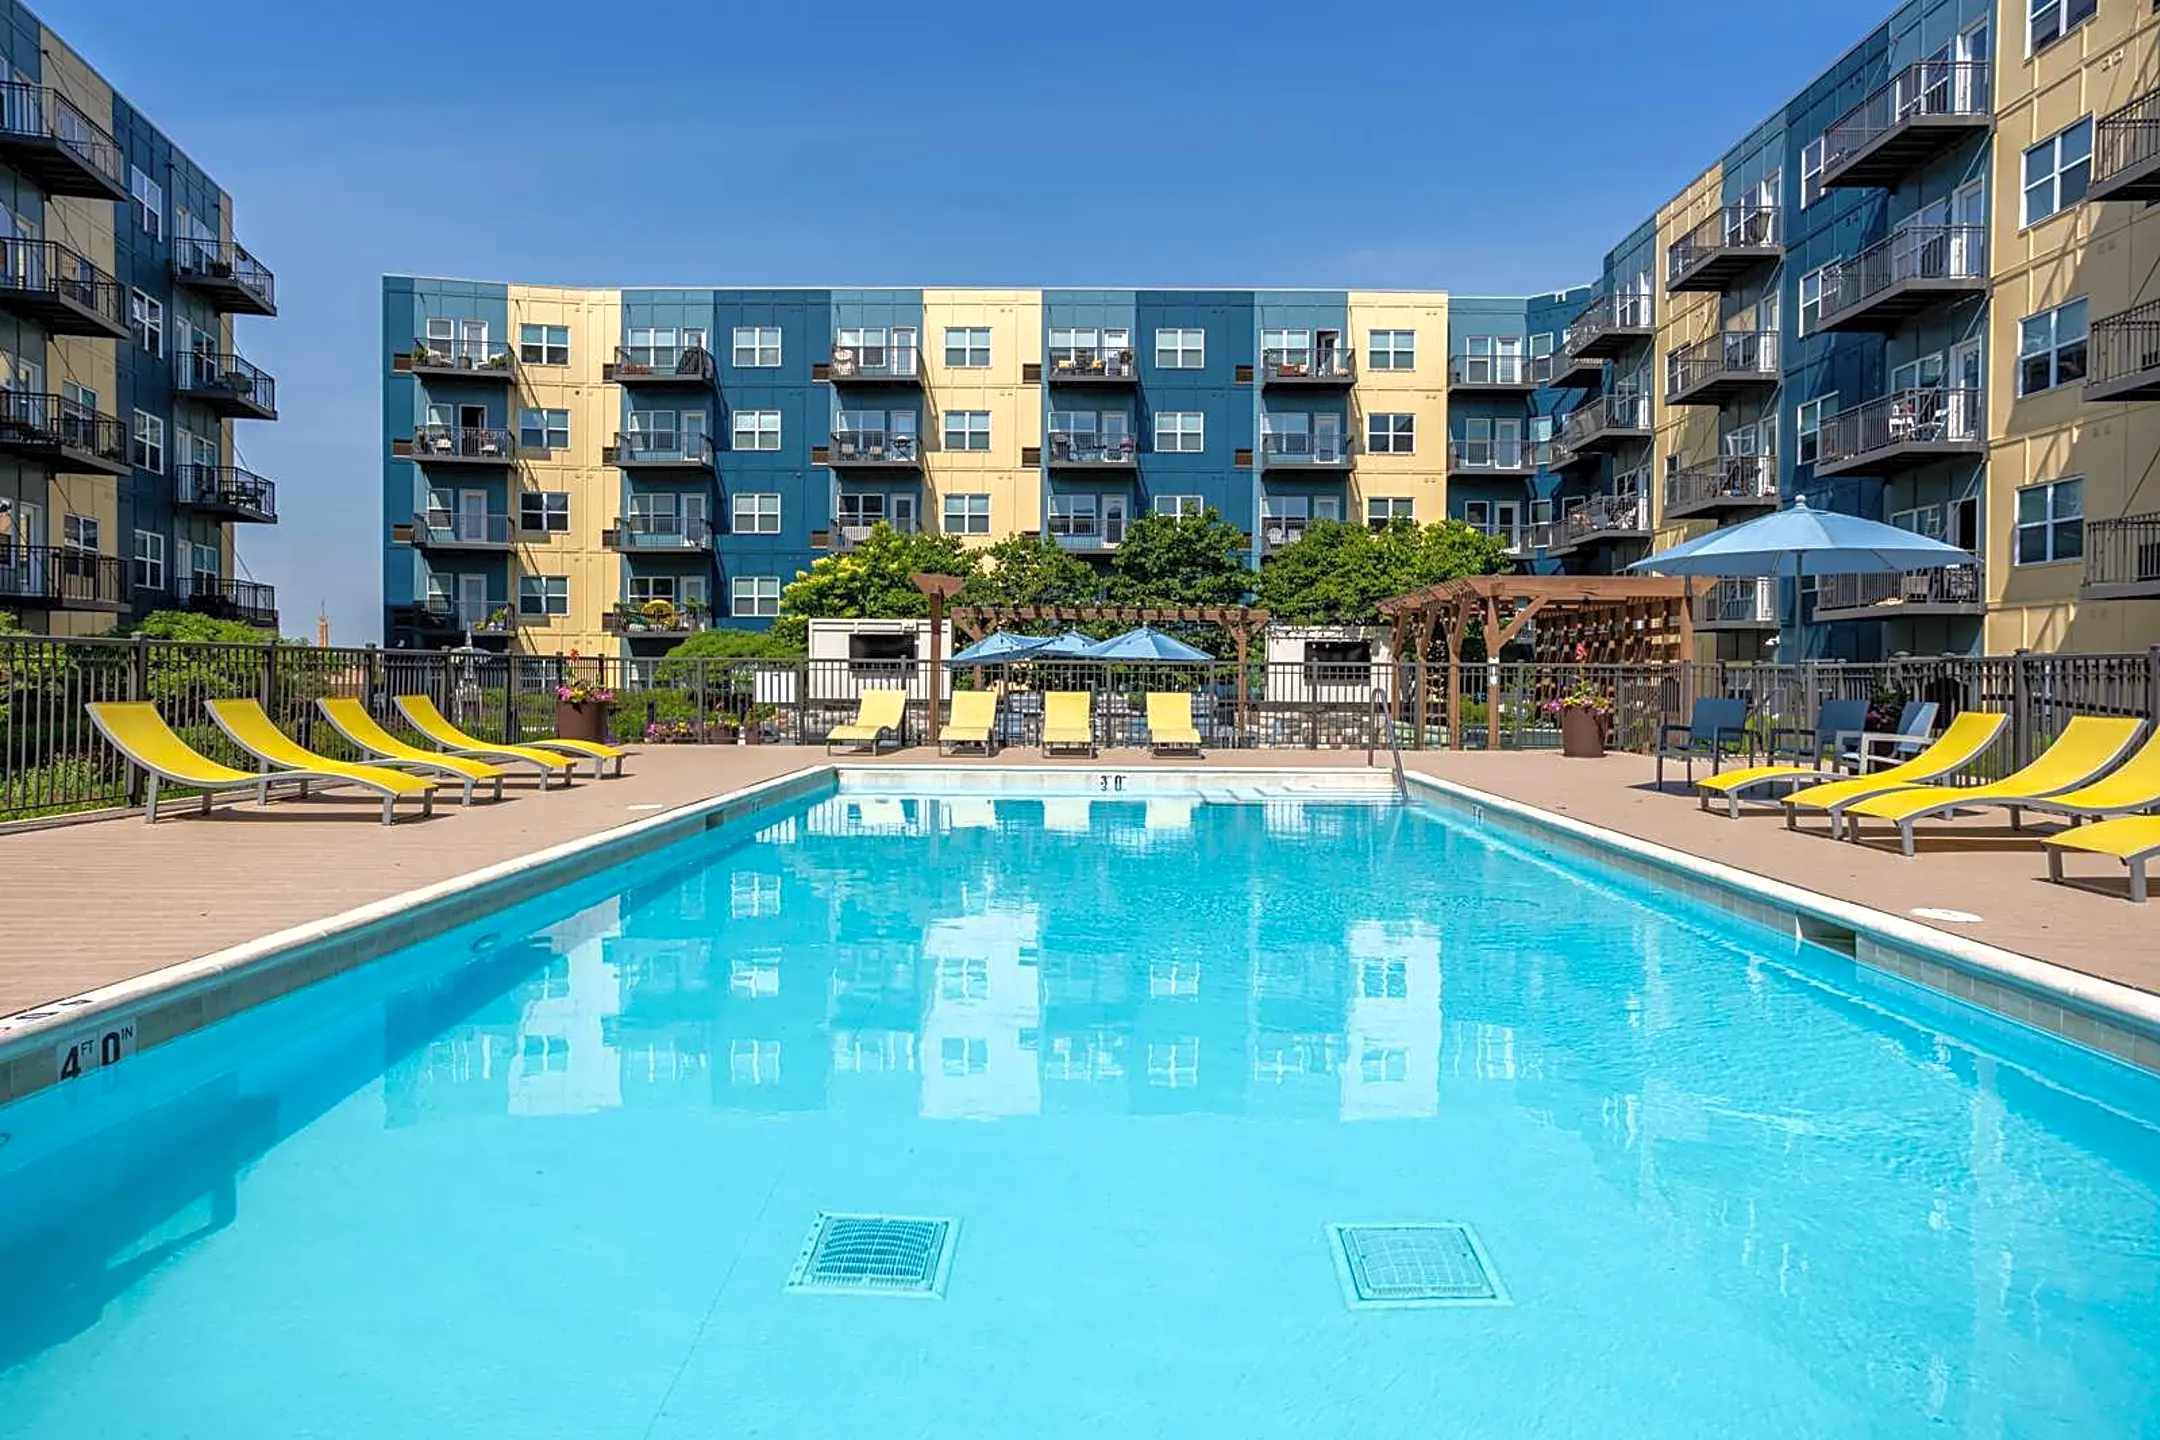 Pool - Wheaton 121 Luxury Apartments - Wheaton, IL